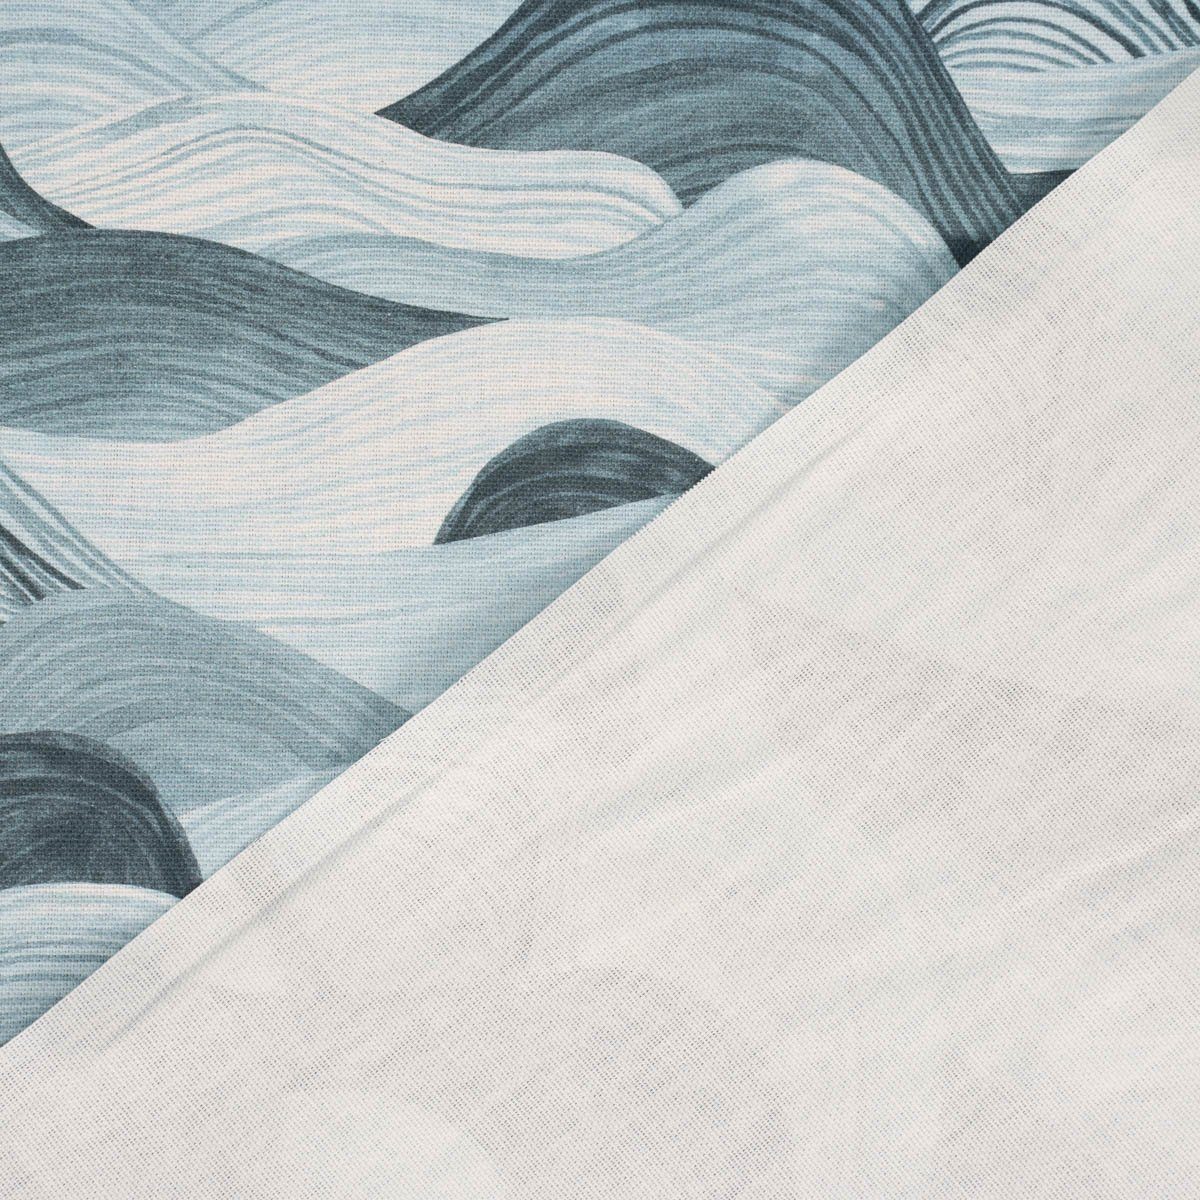 SCHÖNER LEBEN. LEBEN. Tischläufer Tischläufer SCHÖNER Wellen handmade 40x160cm, blau